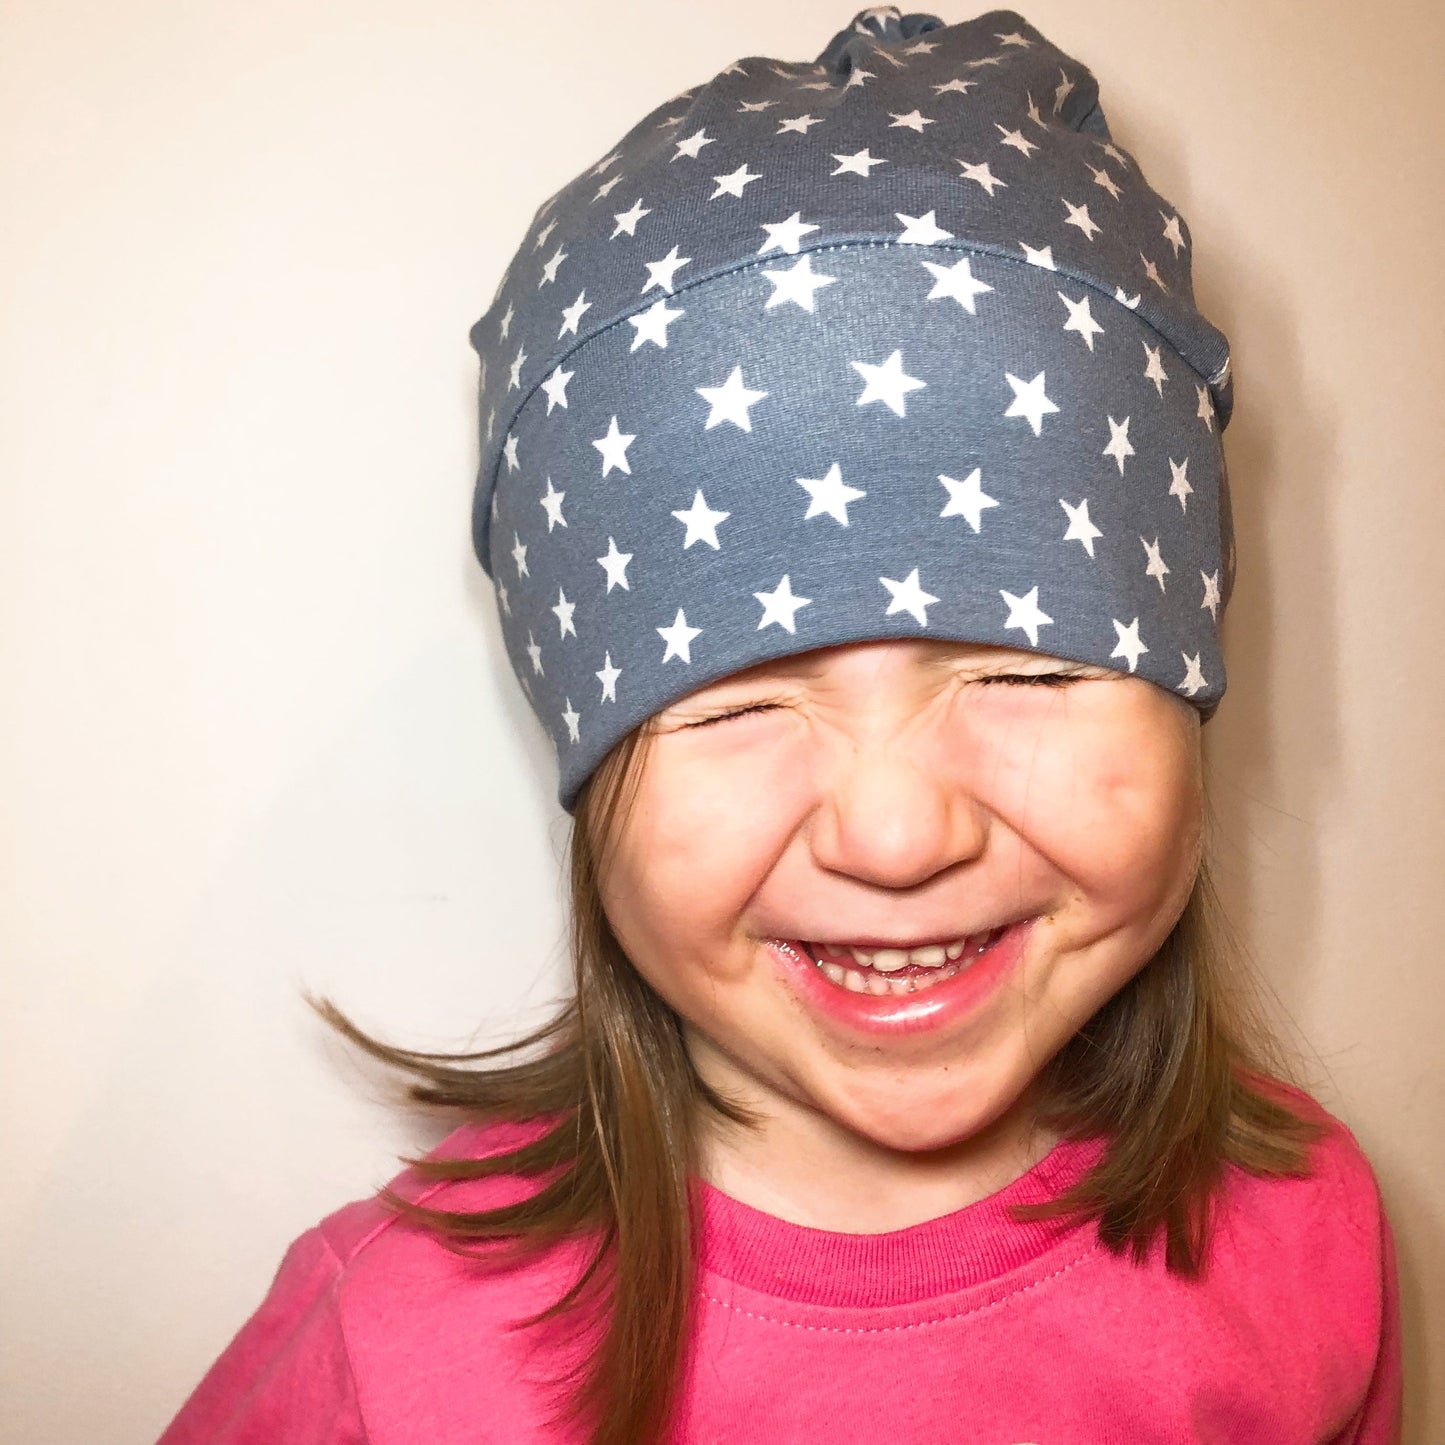 Beanie Hat in Little Kid: Dots on Black